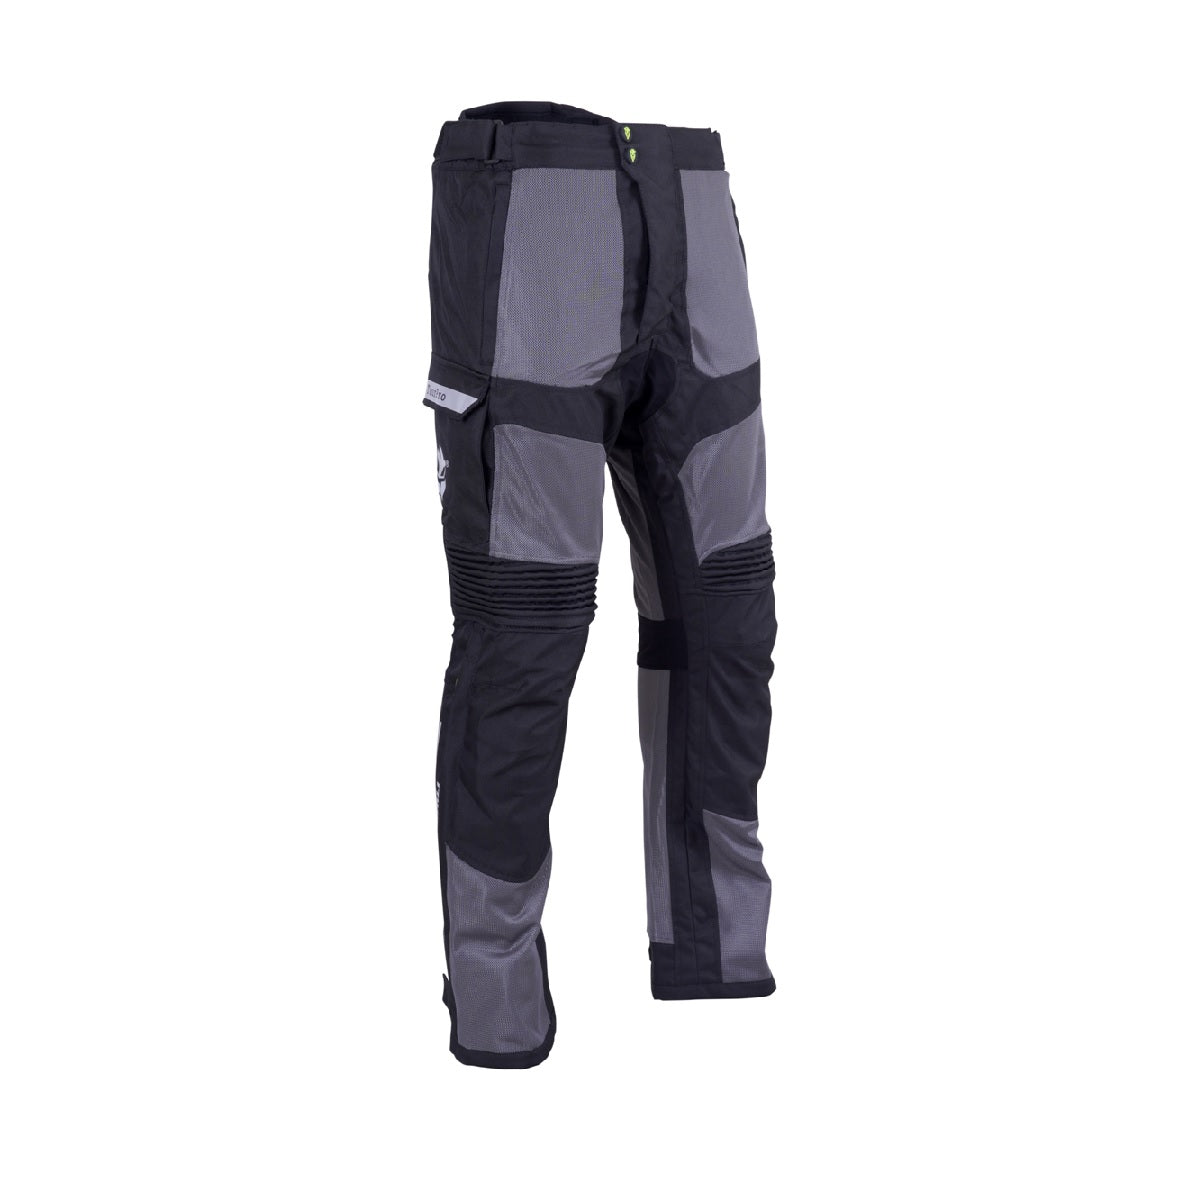 Rukka Kingsley review  Premium motorcycle jacket  trousers